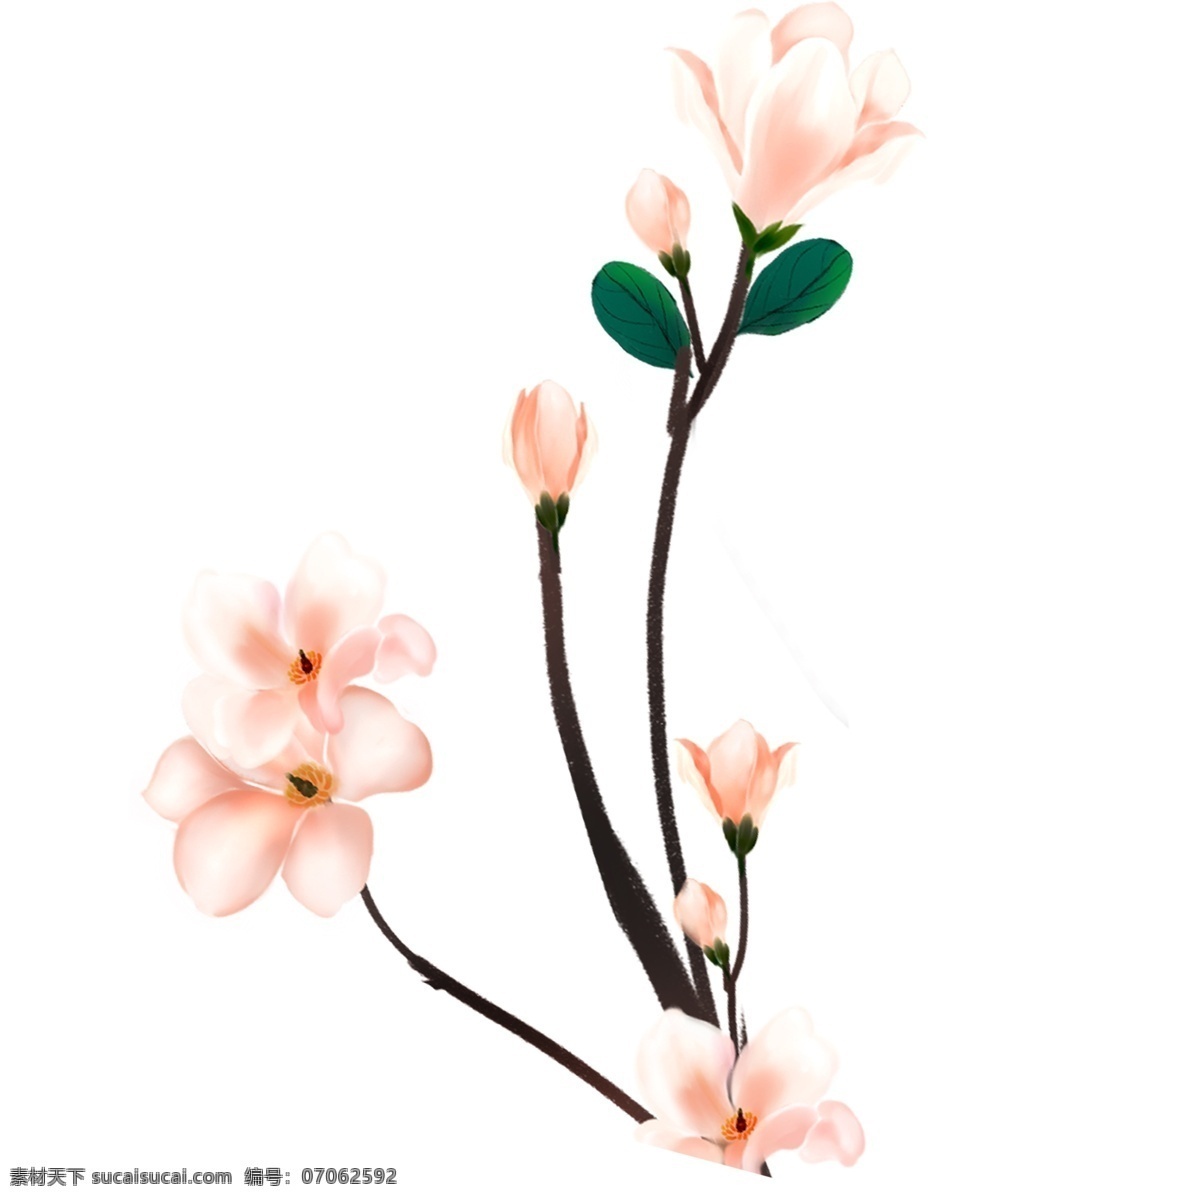 精美 花朵 插画 图案 玉兰花 植物 卡通 彩色 水彩 小清新 创意 装饰 手绘风